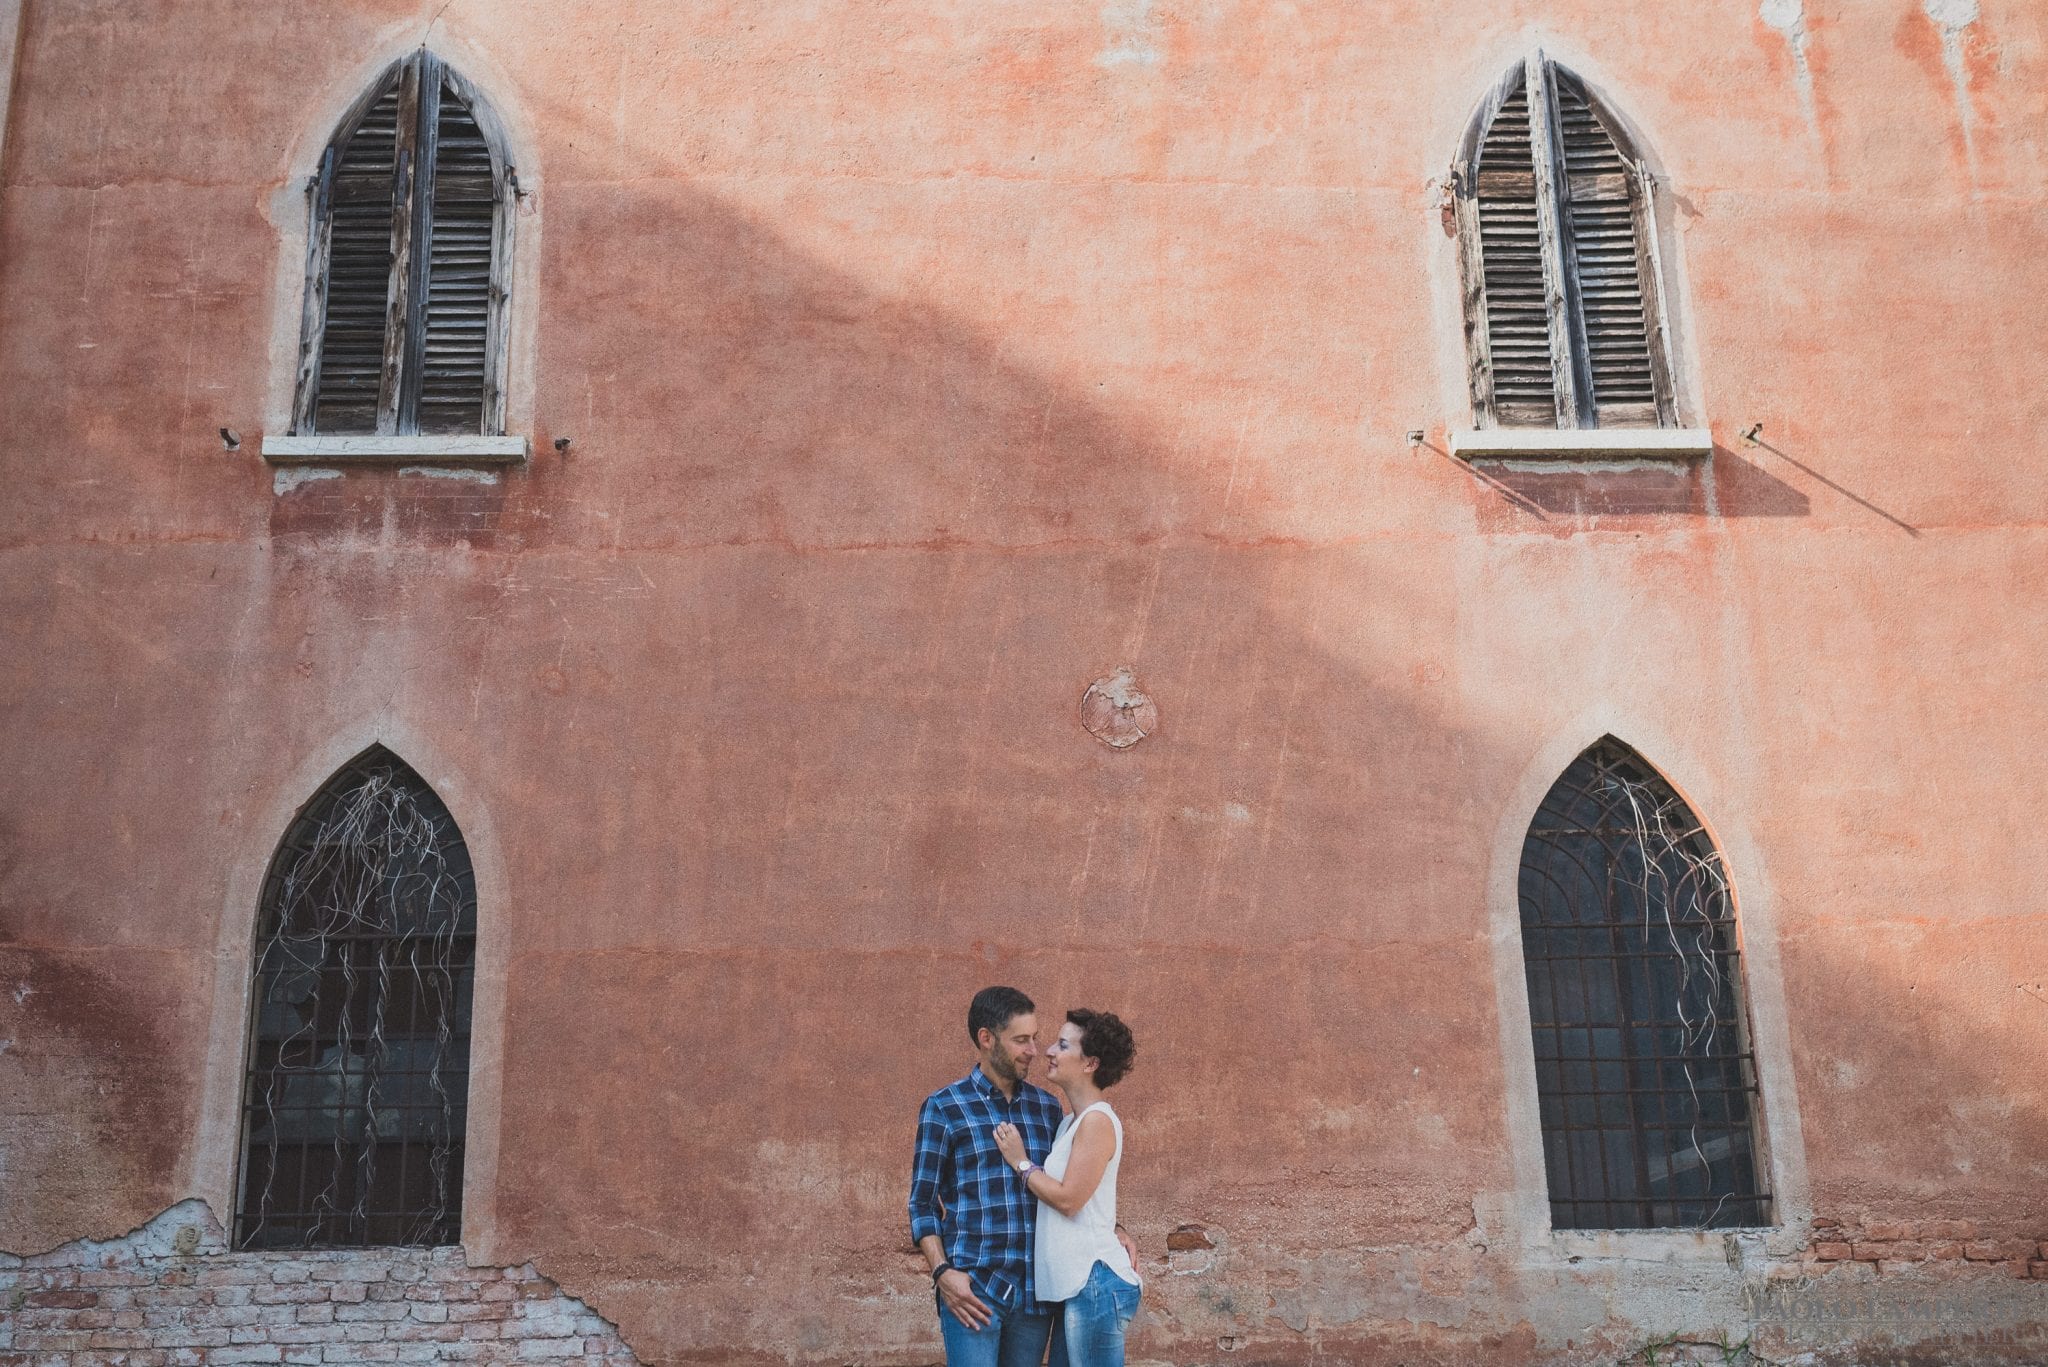 Intimo Engagement Castello Padernello varese saronno como milano servizio fotografico prematrimoniale ritratti intimo romantico moderno artistico creativo photographer lamperti